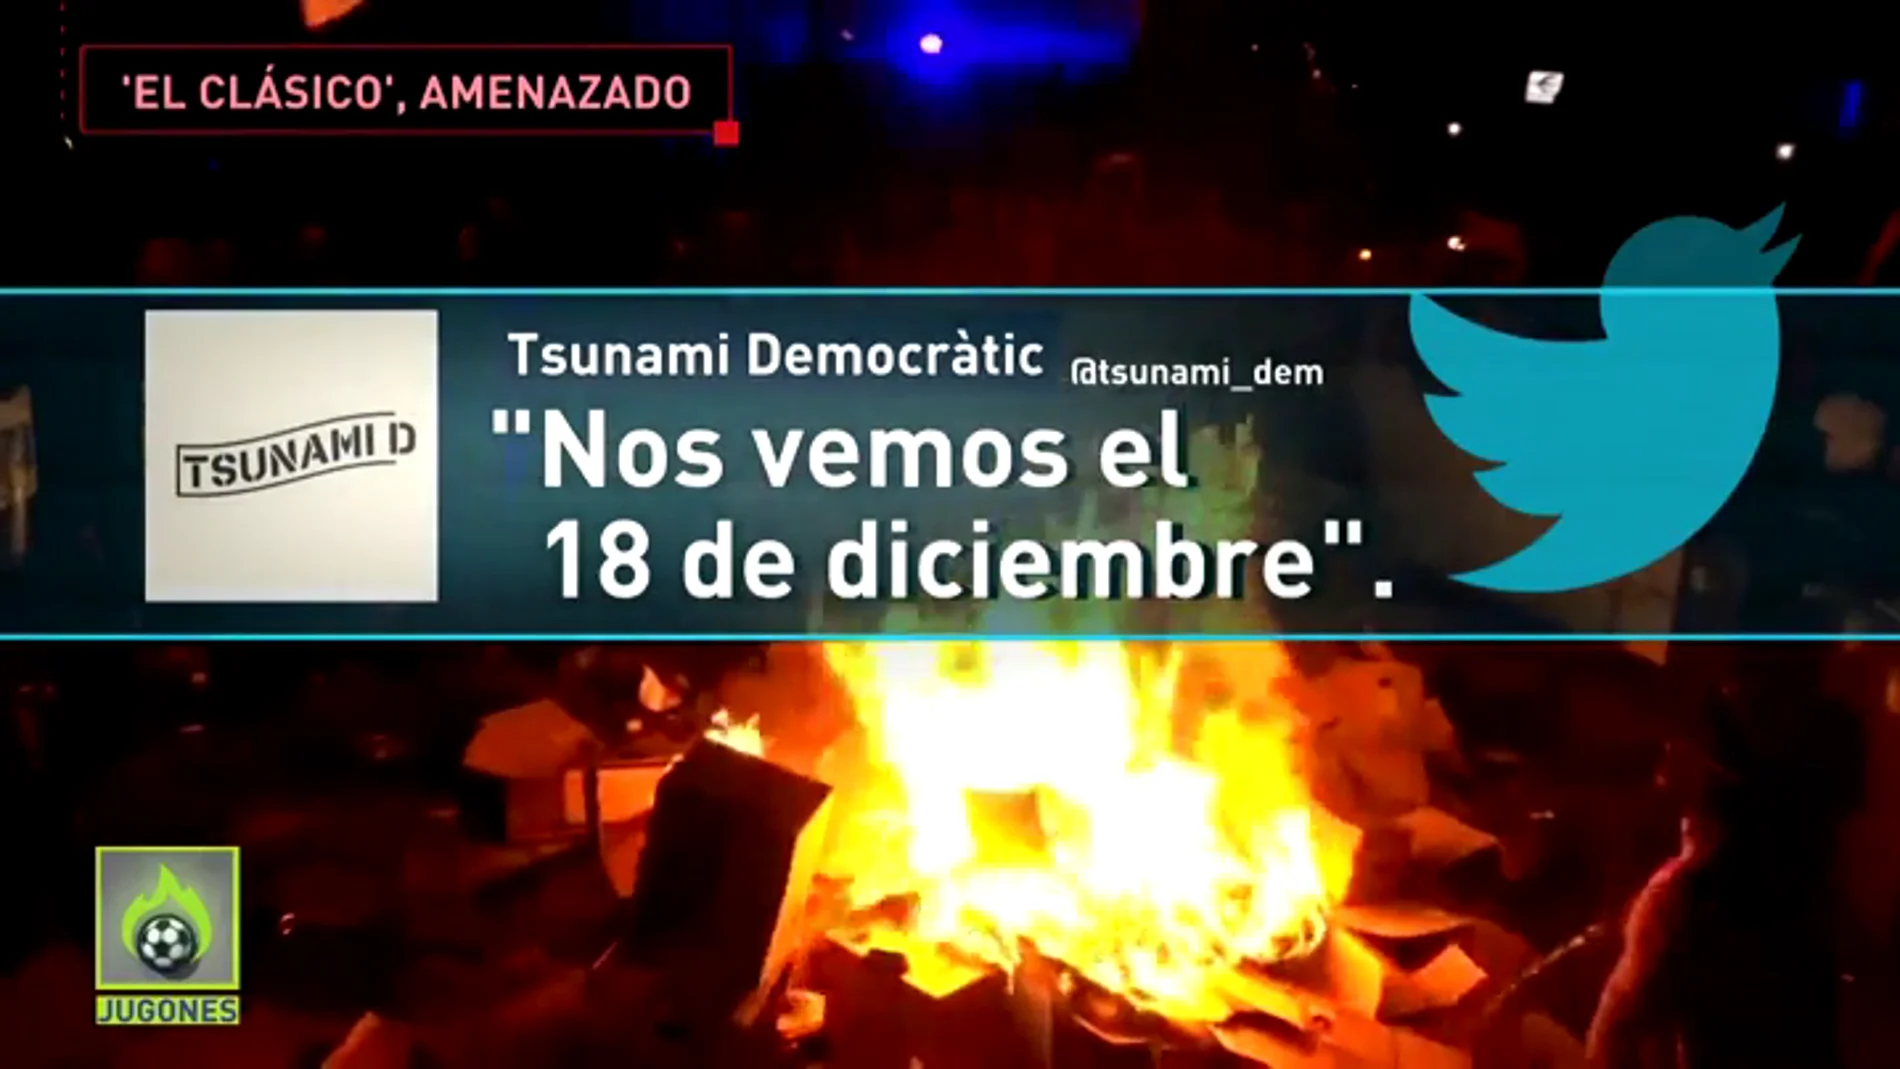 Tsunami Democràtic amenaza el Clásico: "Nos vemos el 18 de diciembre"